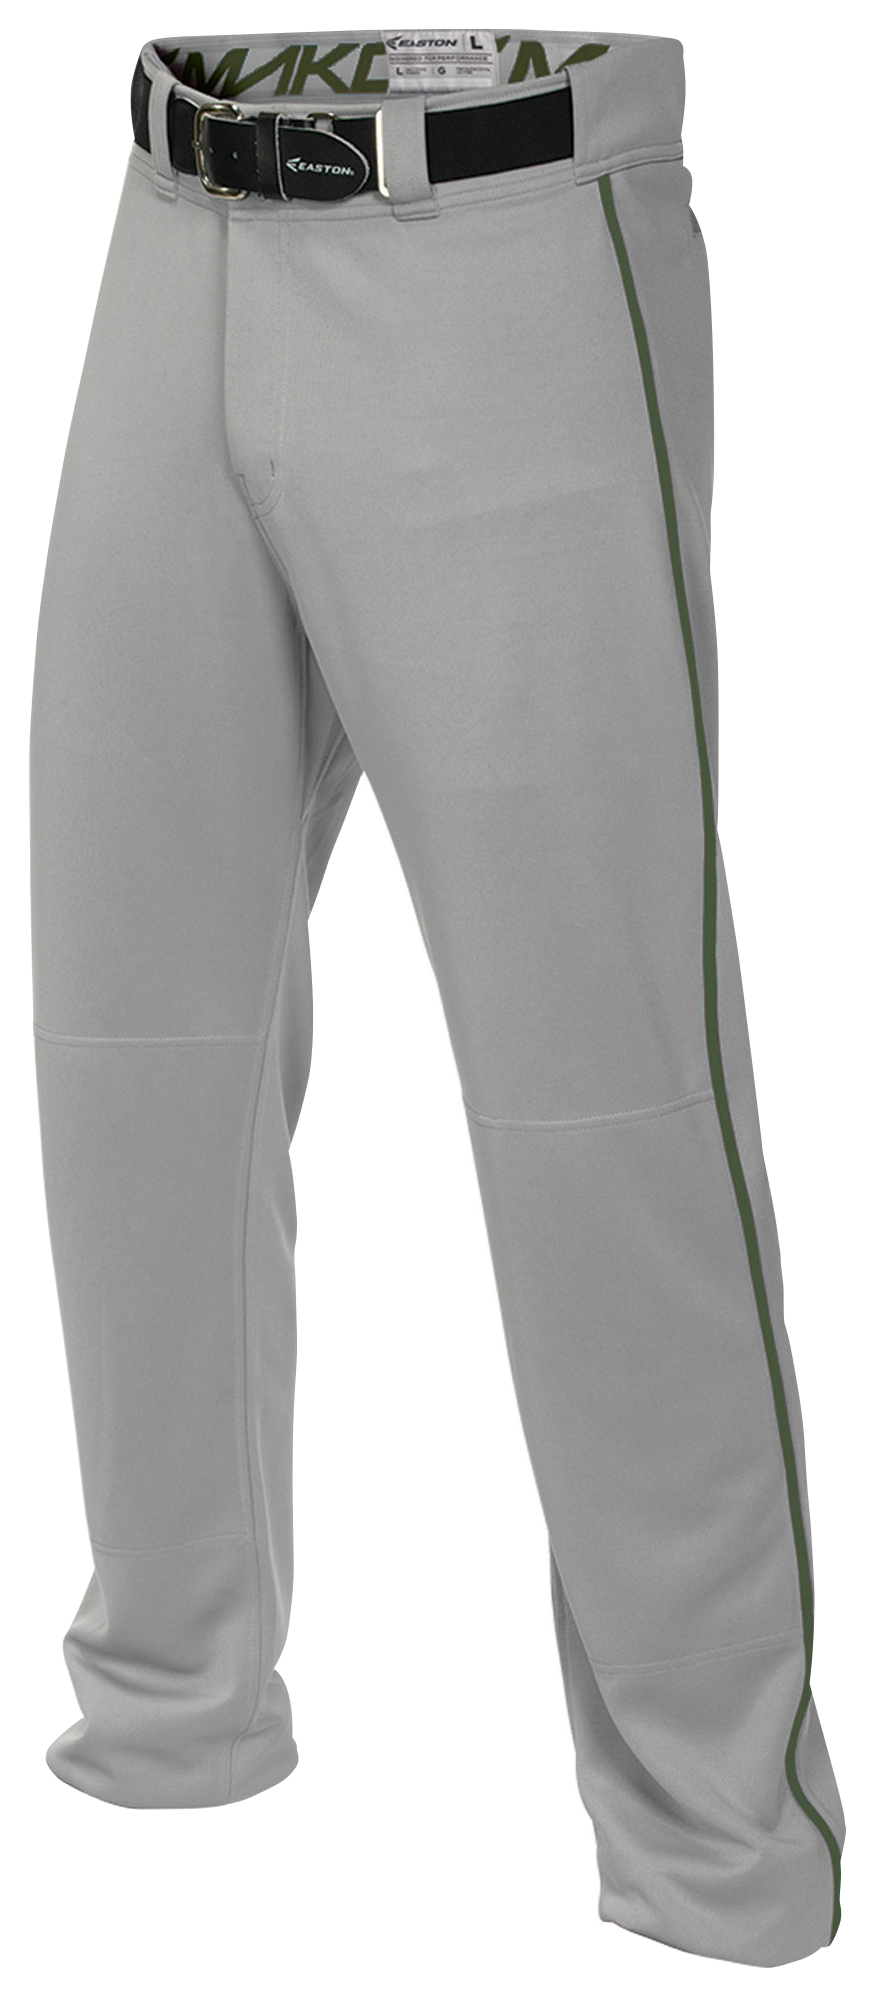 Majestic youth NEW Taille S-XL élastique bas ceinture Baseball Pantalon Blanc/Pro Gris